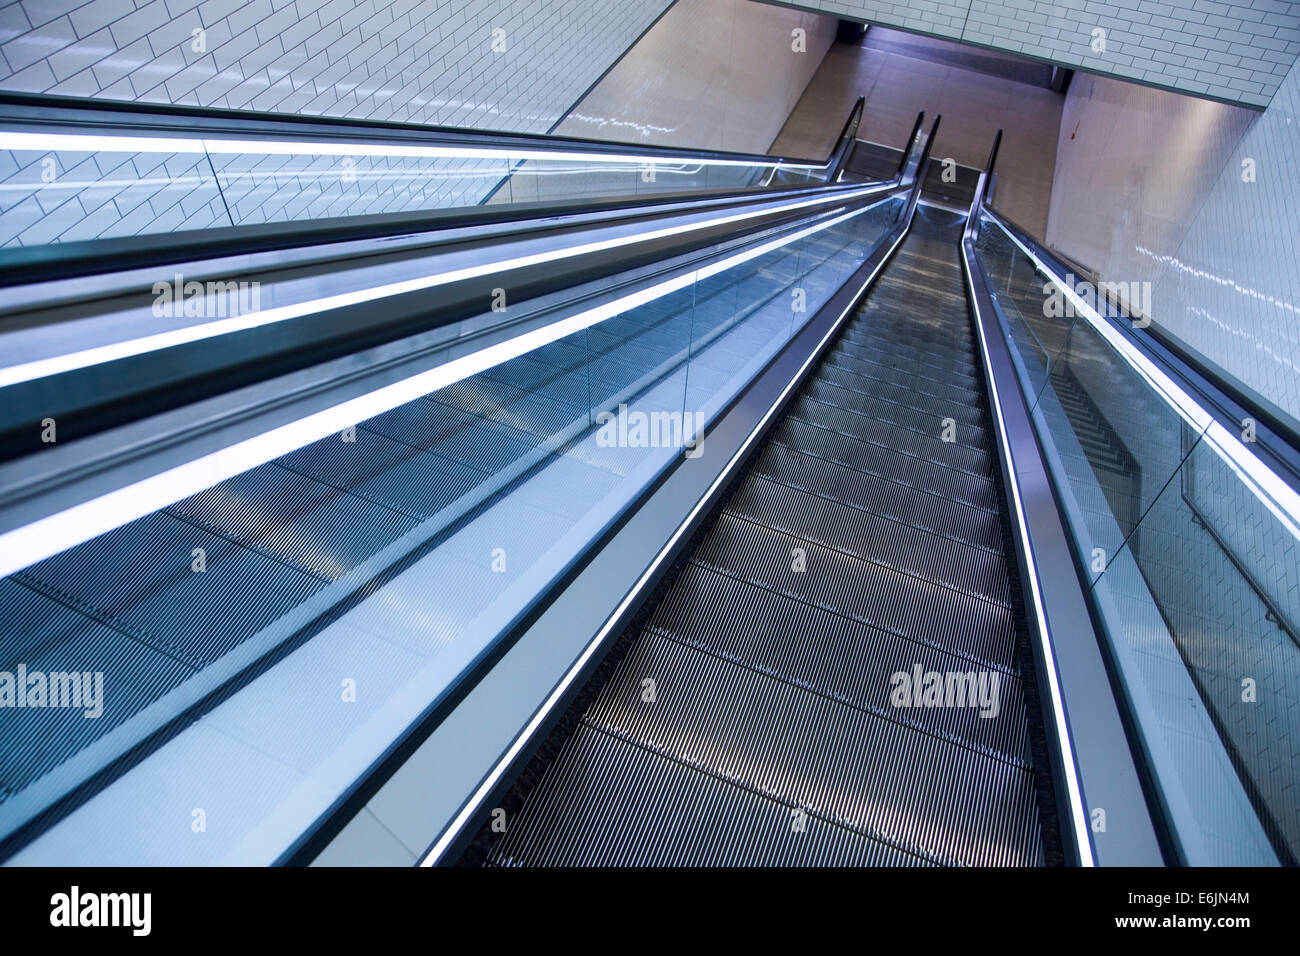 Futuristic escalators Stock Photo